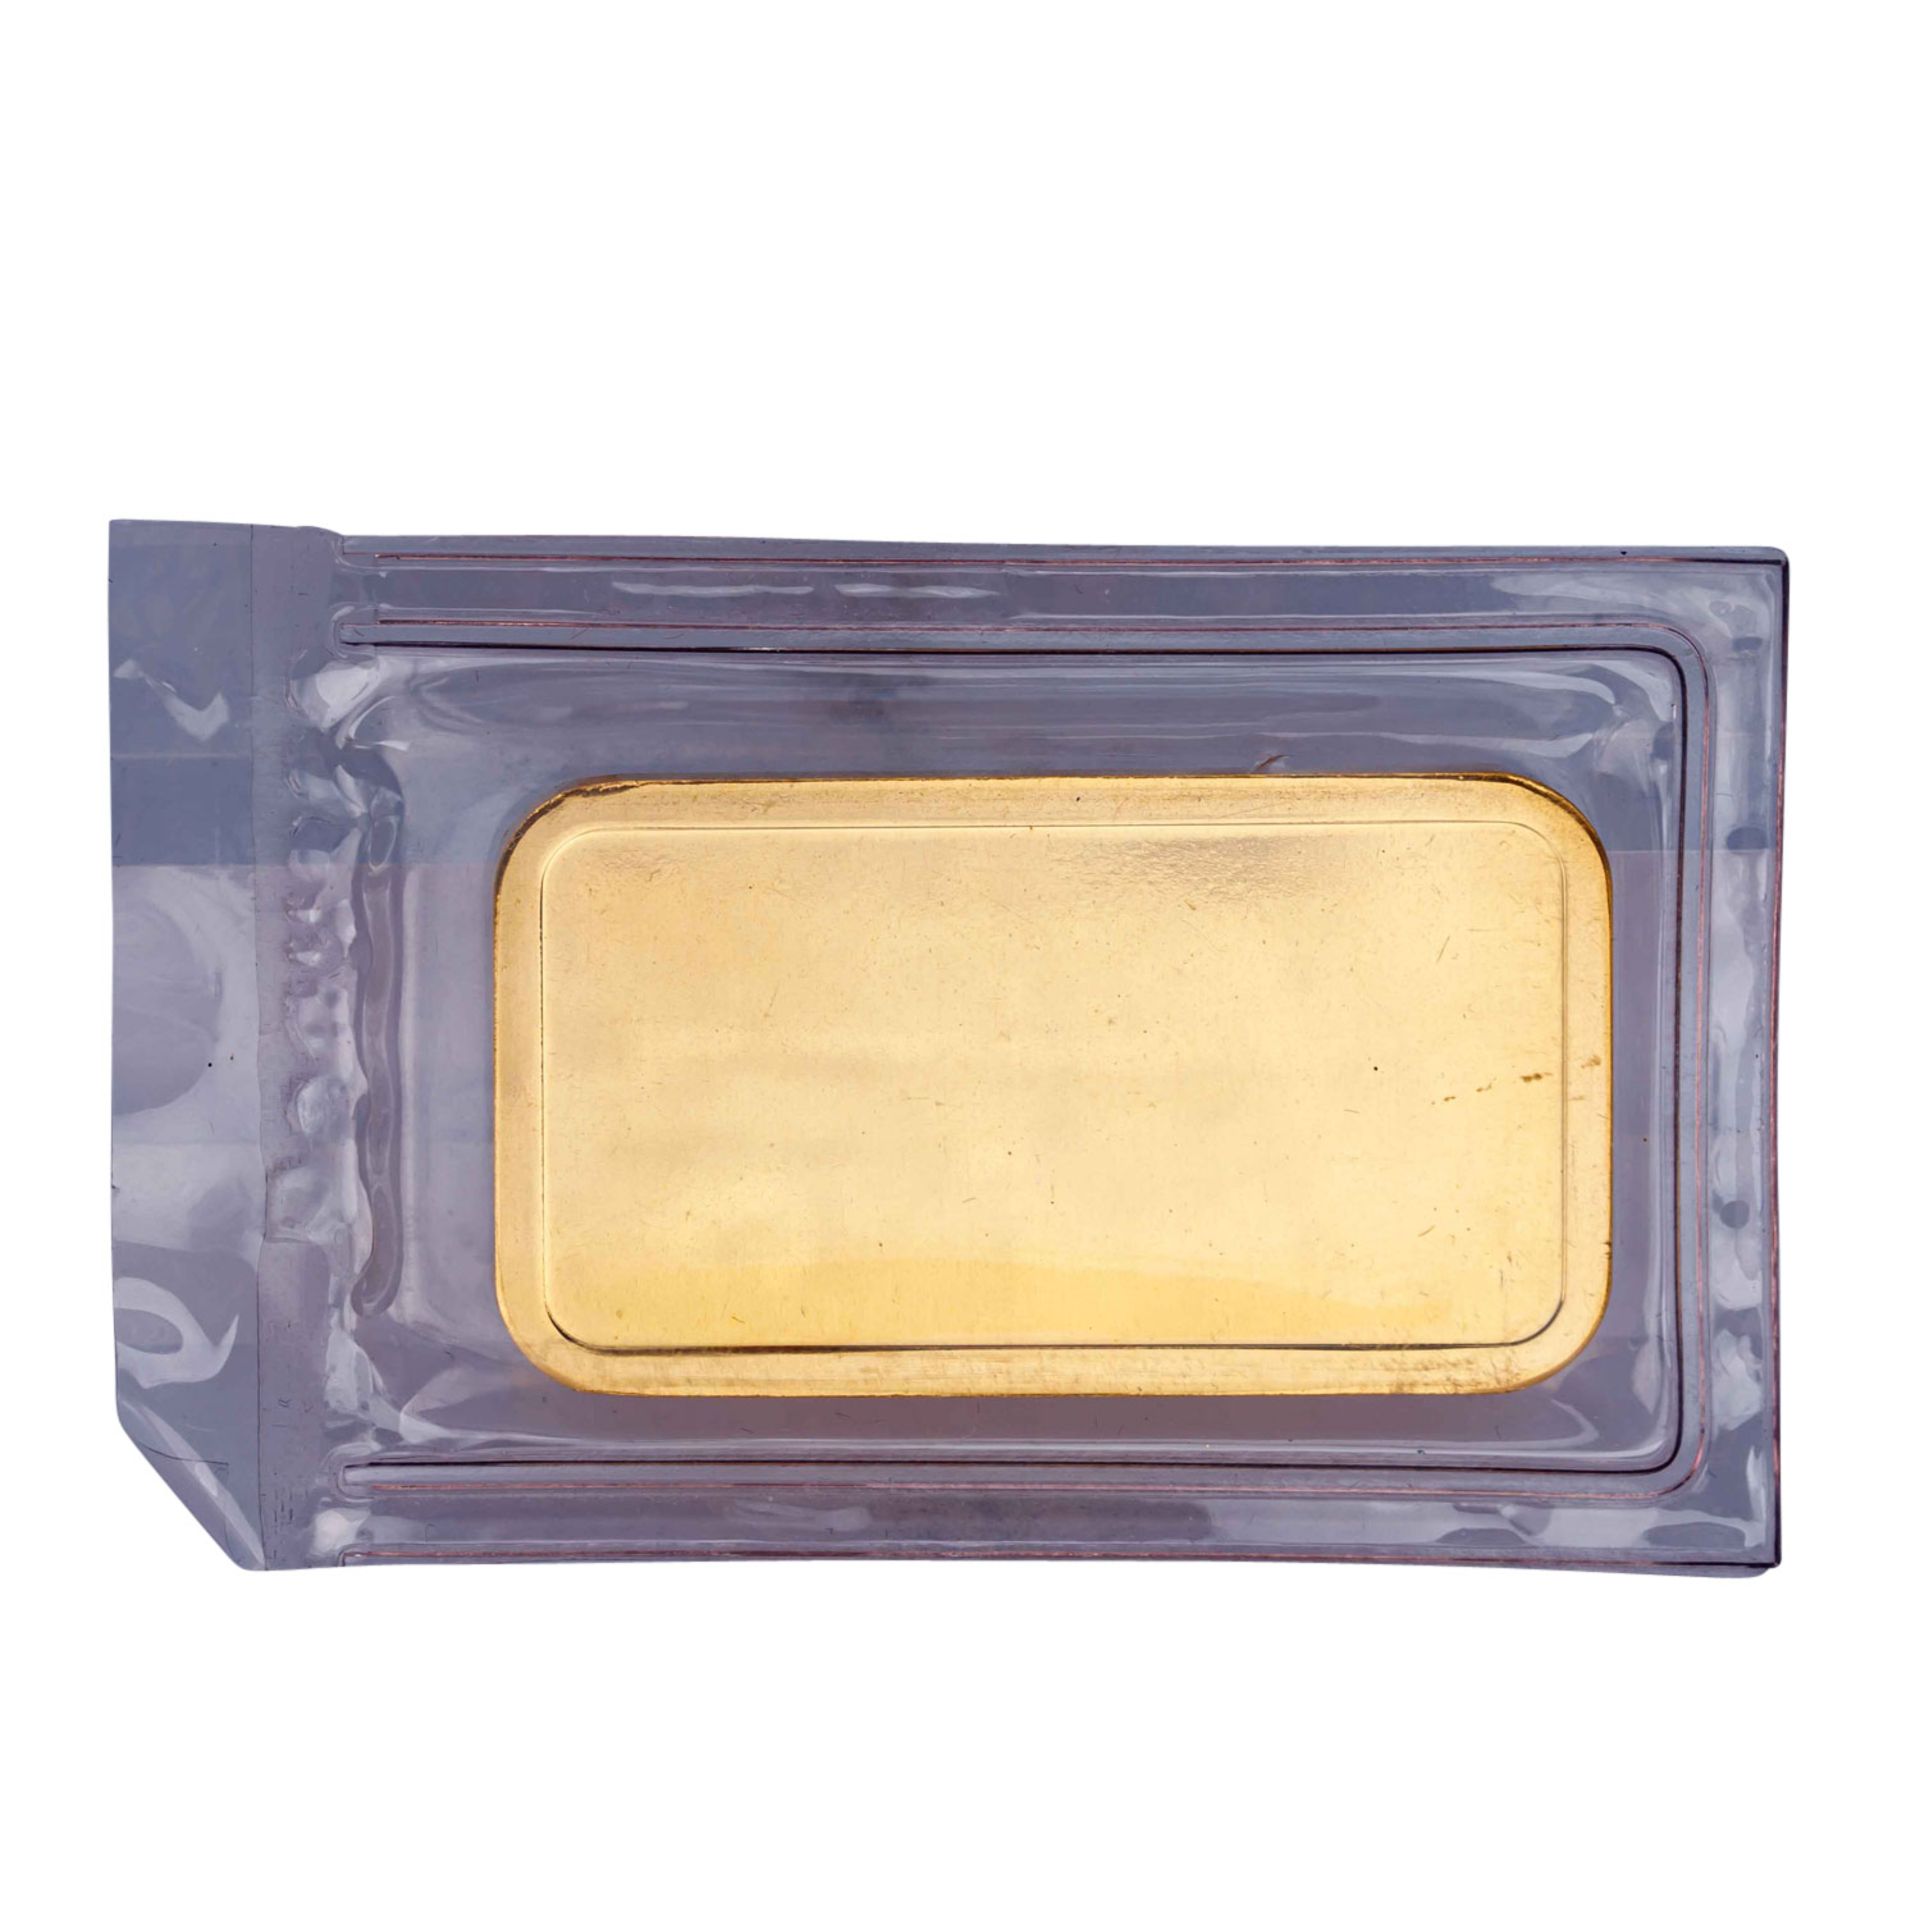 Goldbarren - 100g GOLD fein, Goldbarren geprägt, Hersteller Degussa, - Image 2 of 2